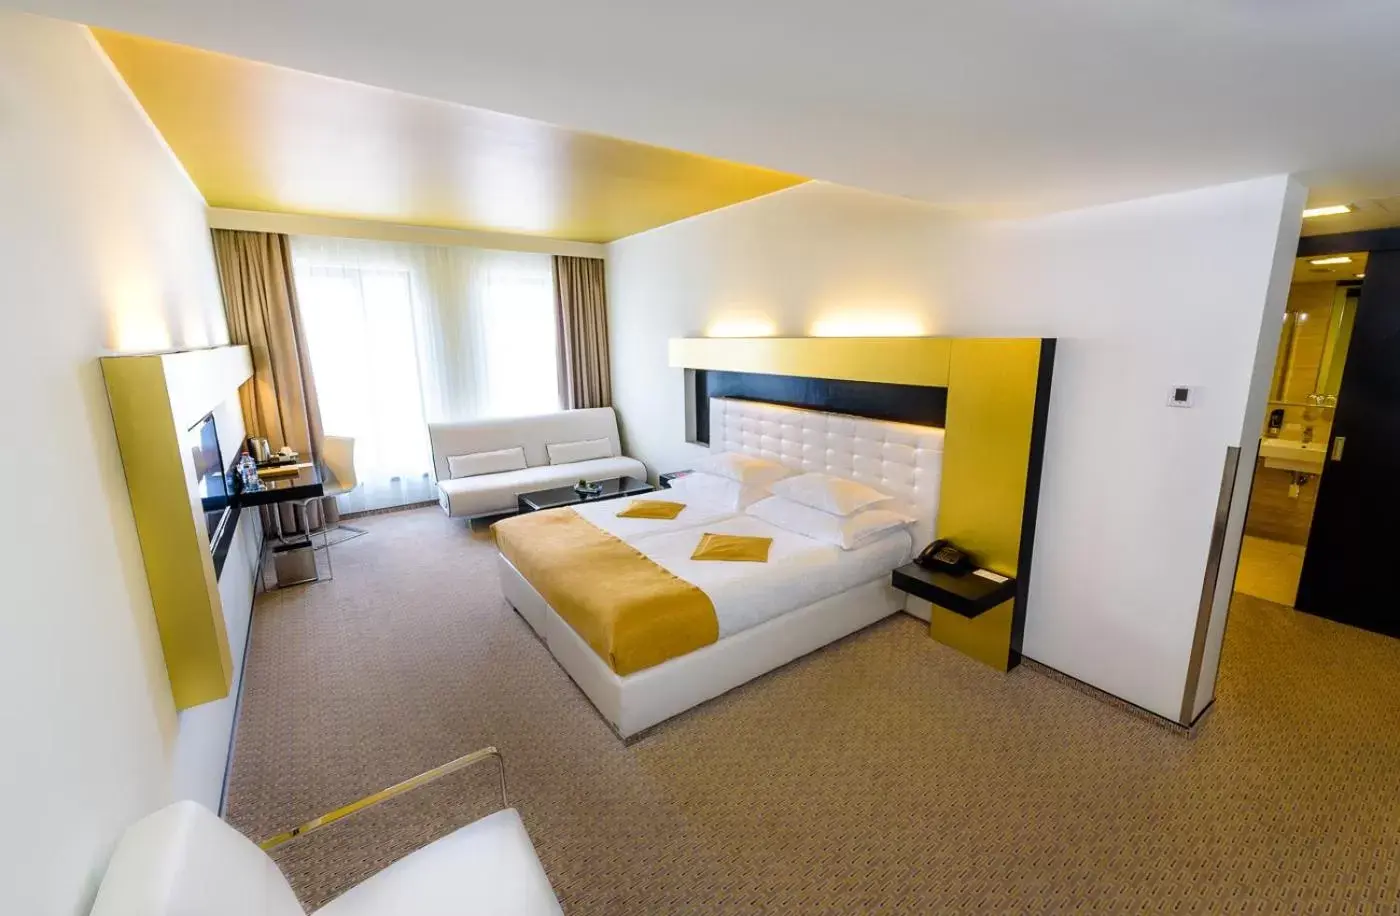 Bedroom, Room Photo in Grandior Hotel Prague